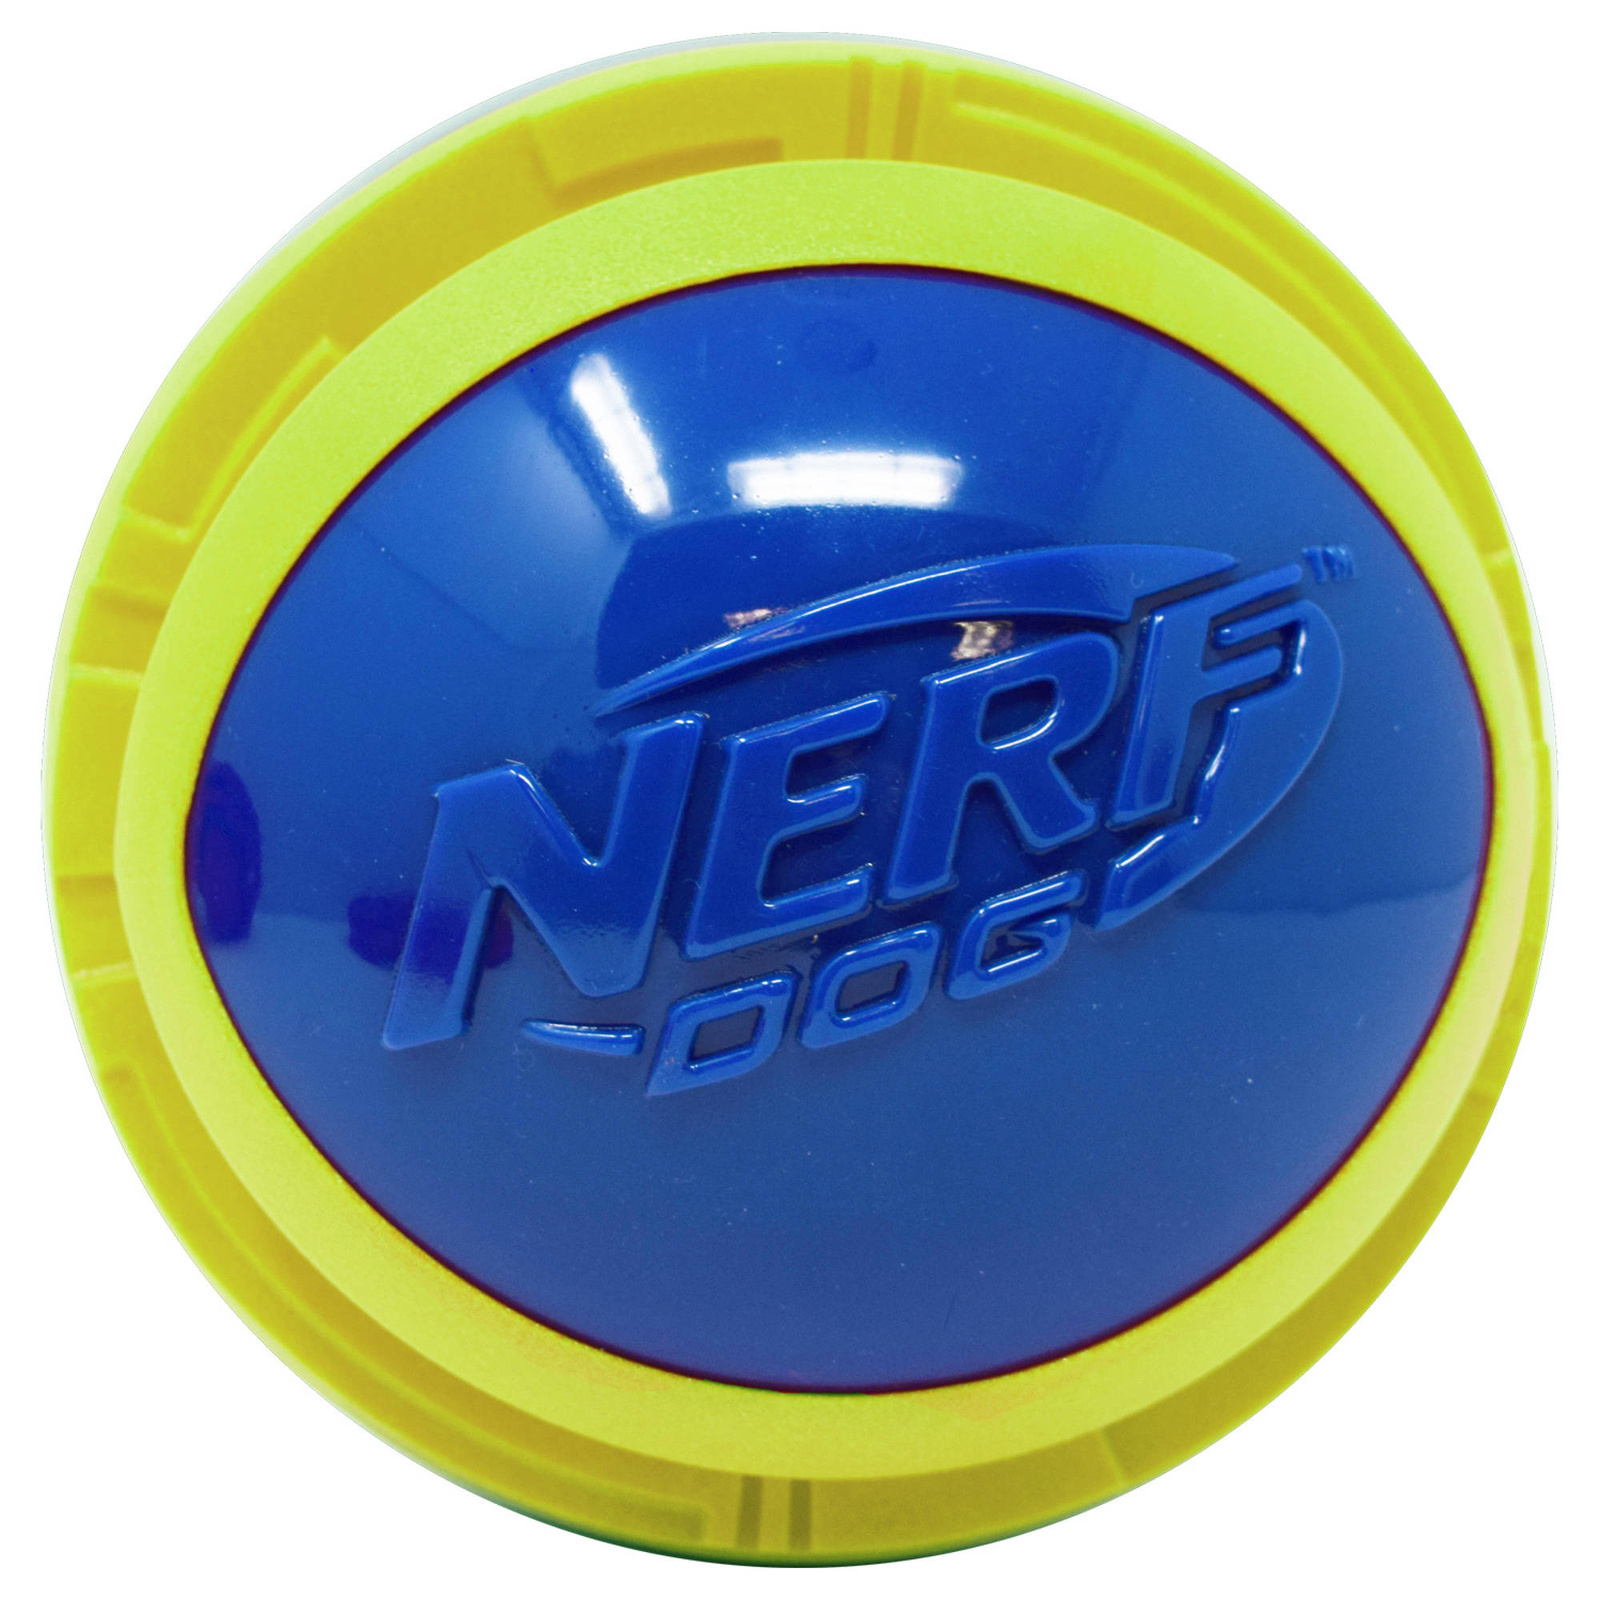 Nerf Nerf мяч из вспененной резины и термопластичной резины,14 см (серия Мегатон), (синий/зеленый) (390 г) nerf nerf мяч из вспененной резины и термопластичной резины 14 см серия мегатон синий зеленый 390 г